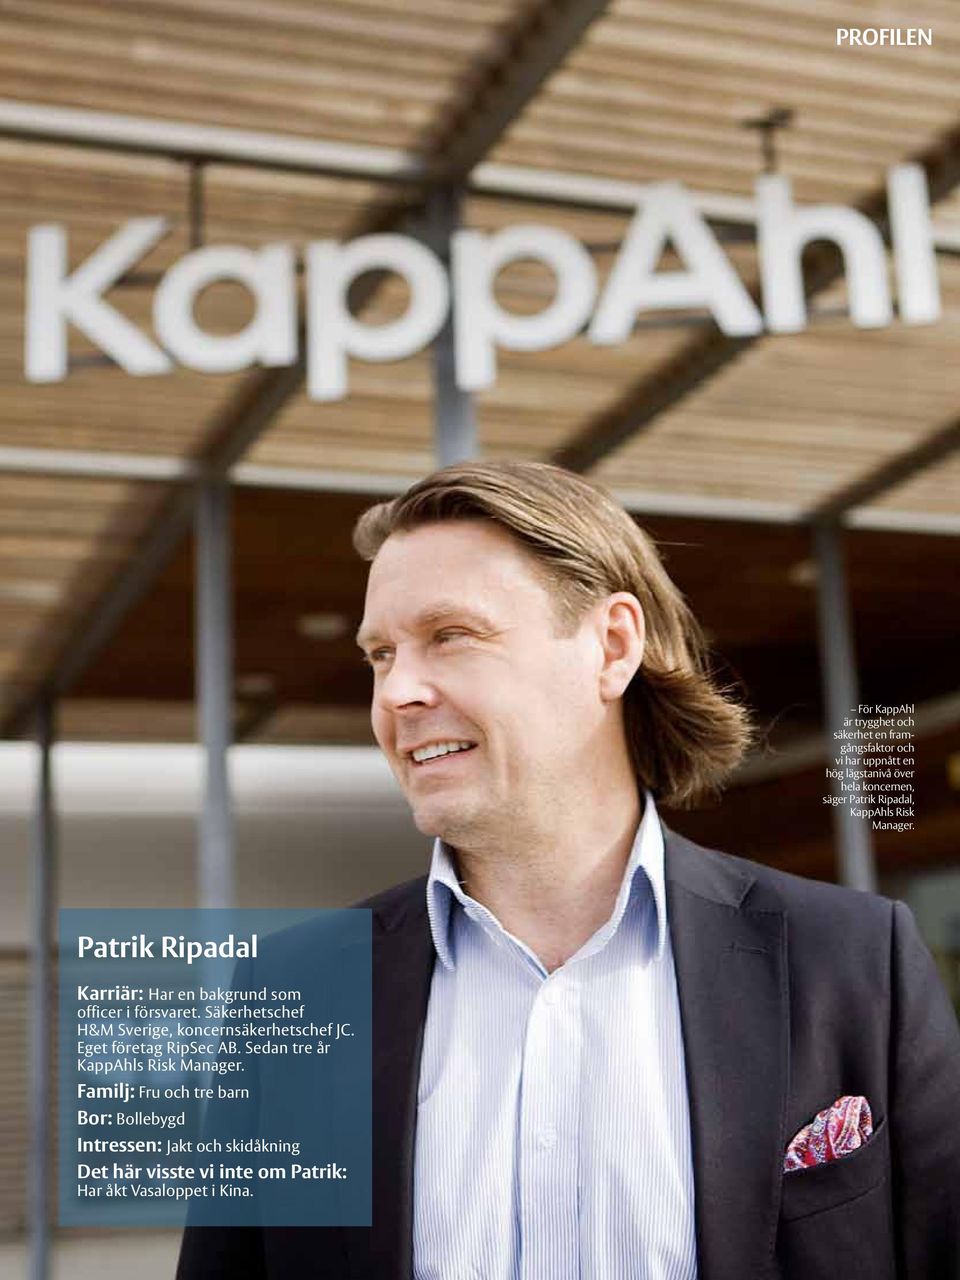 Säkerhetschef H&M Sverige, koncernsäkerhetschef JC. Eget företag RipSec AB. Sedan tre år KappAhls Risk Manager.